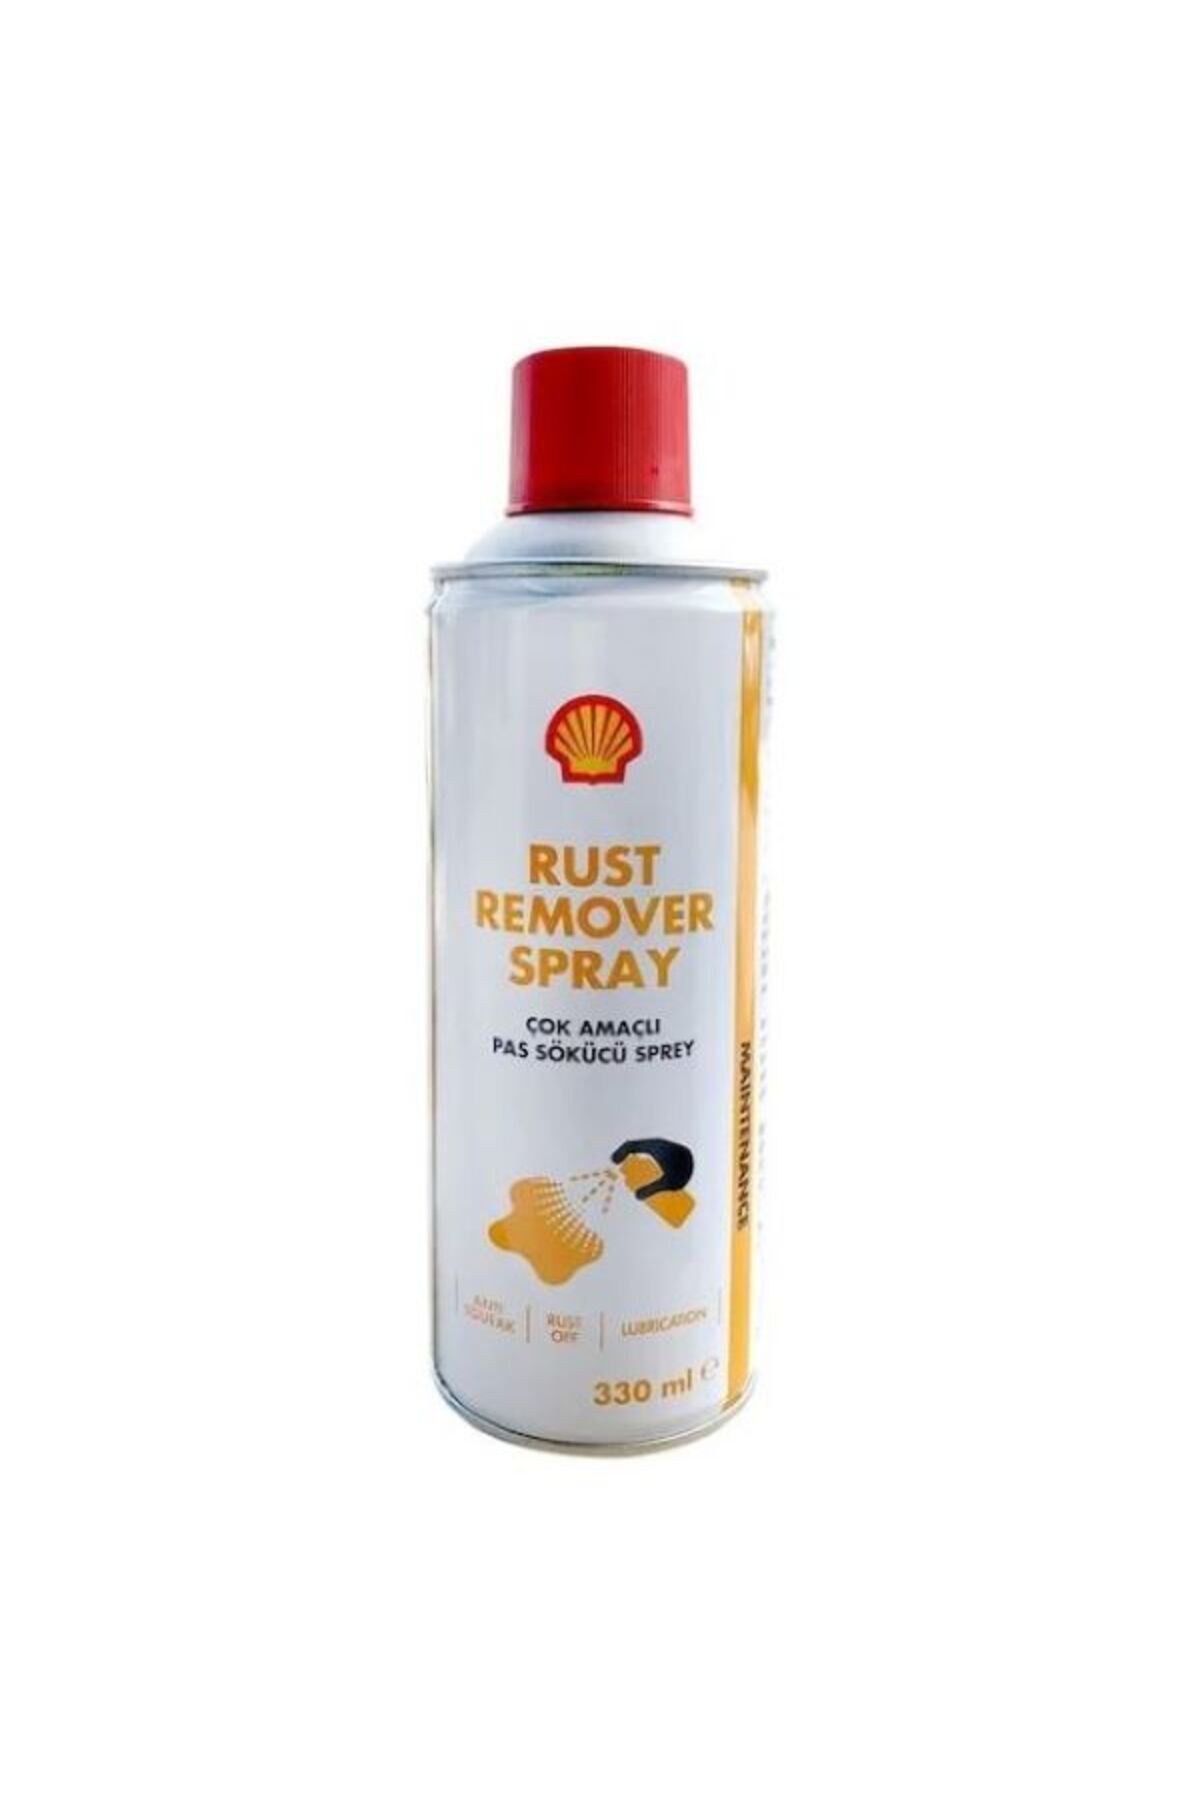 Shell Rust Remover Spray Çok Amaçlı Pas Sökücü Sprey 220 ML